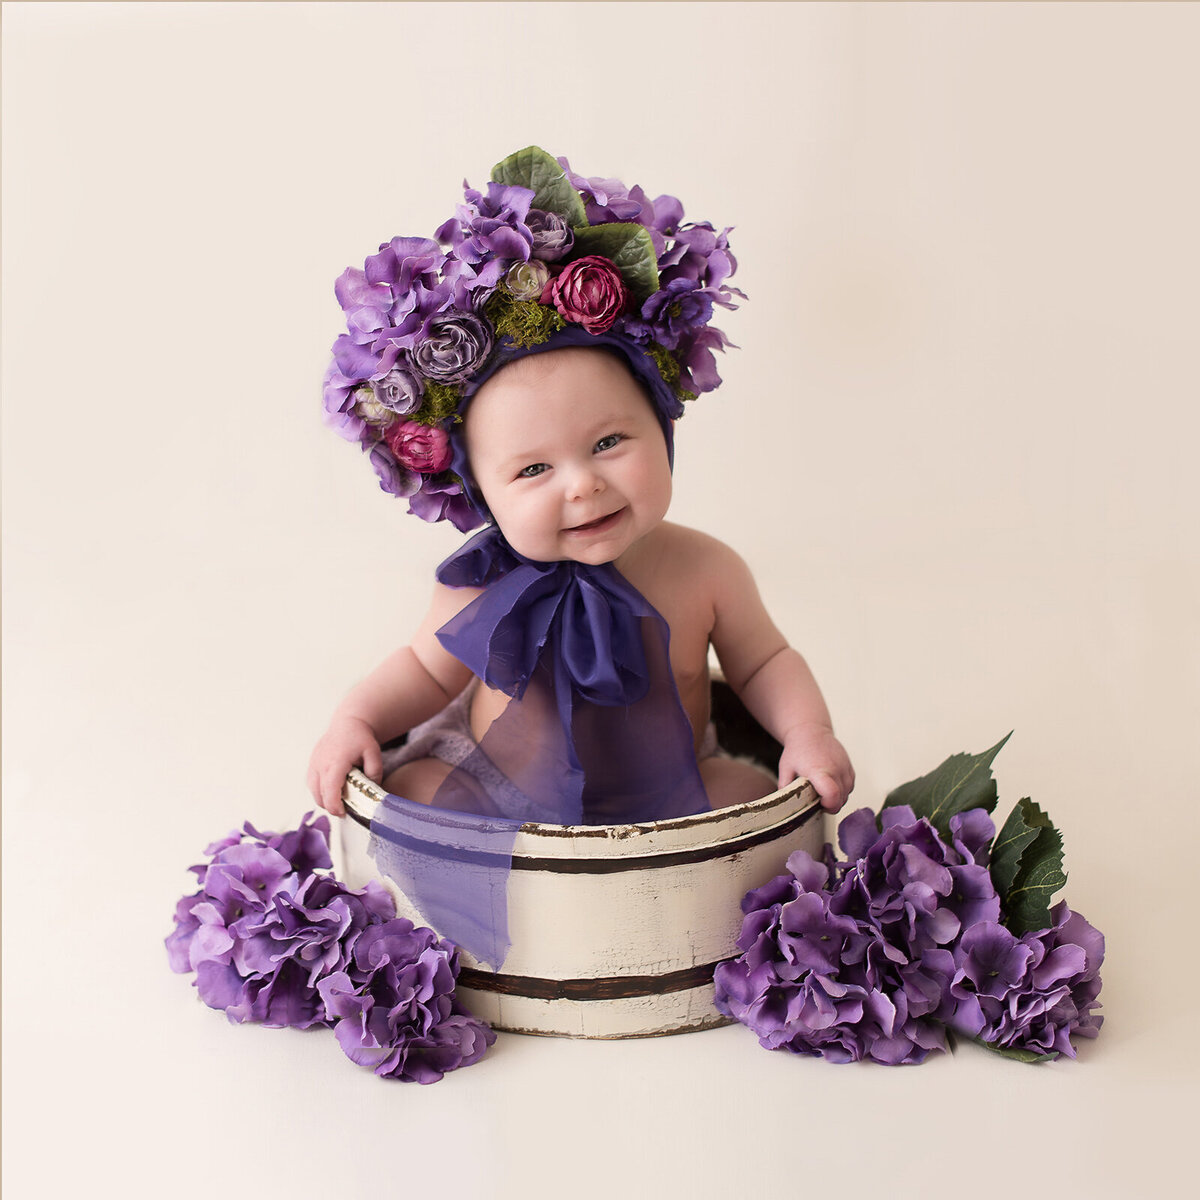 Cute little baby in a purple flowers in a bucket